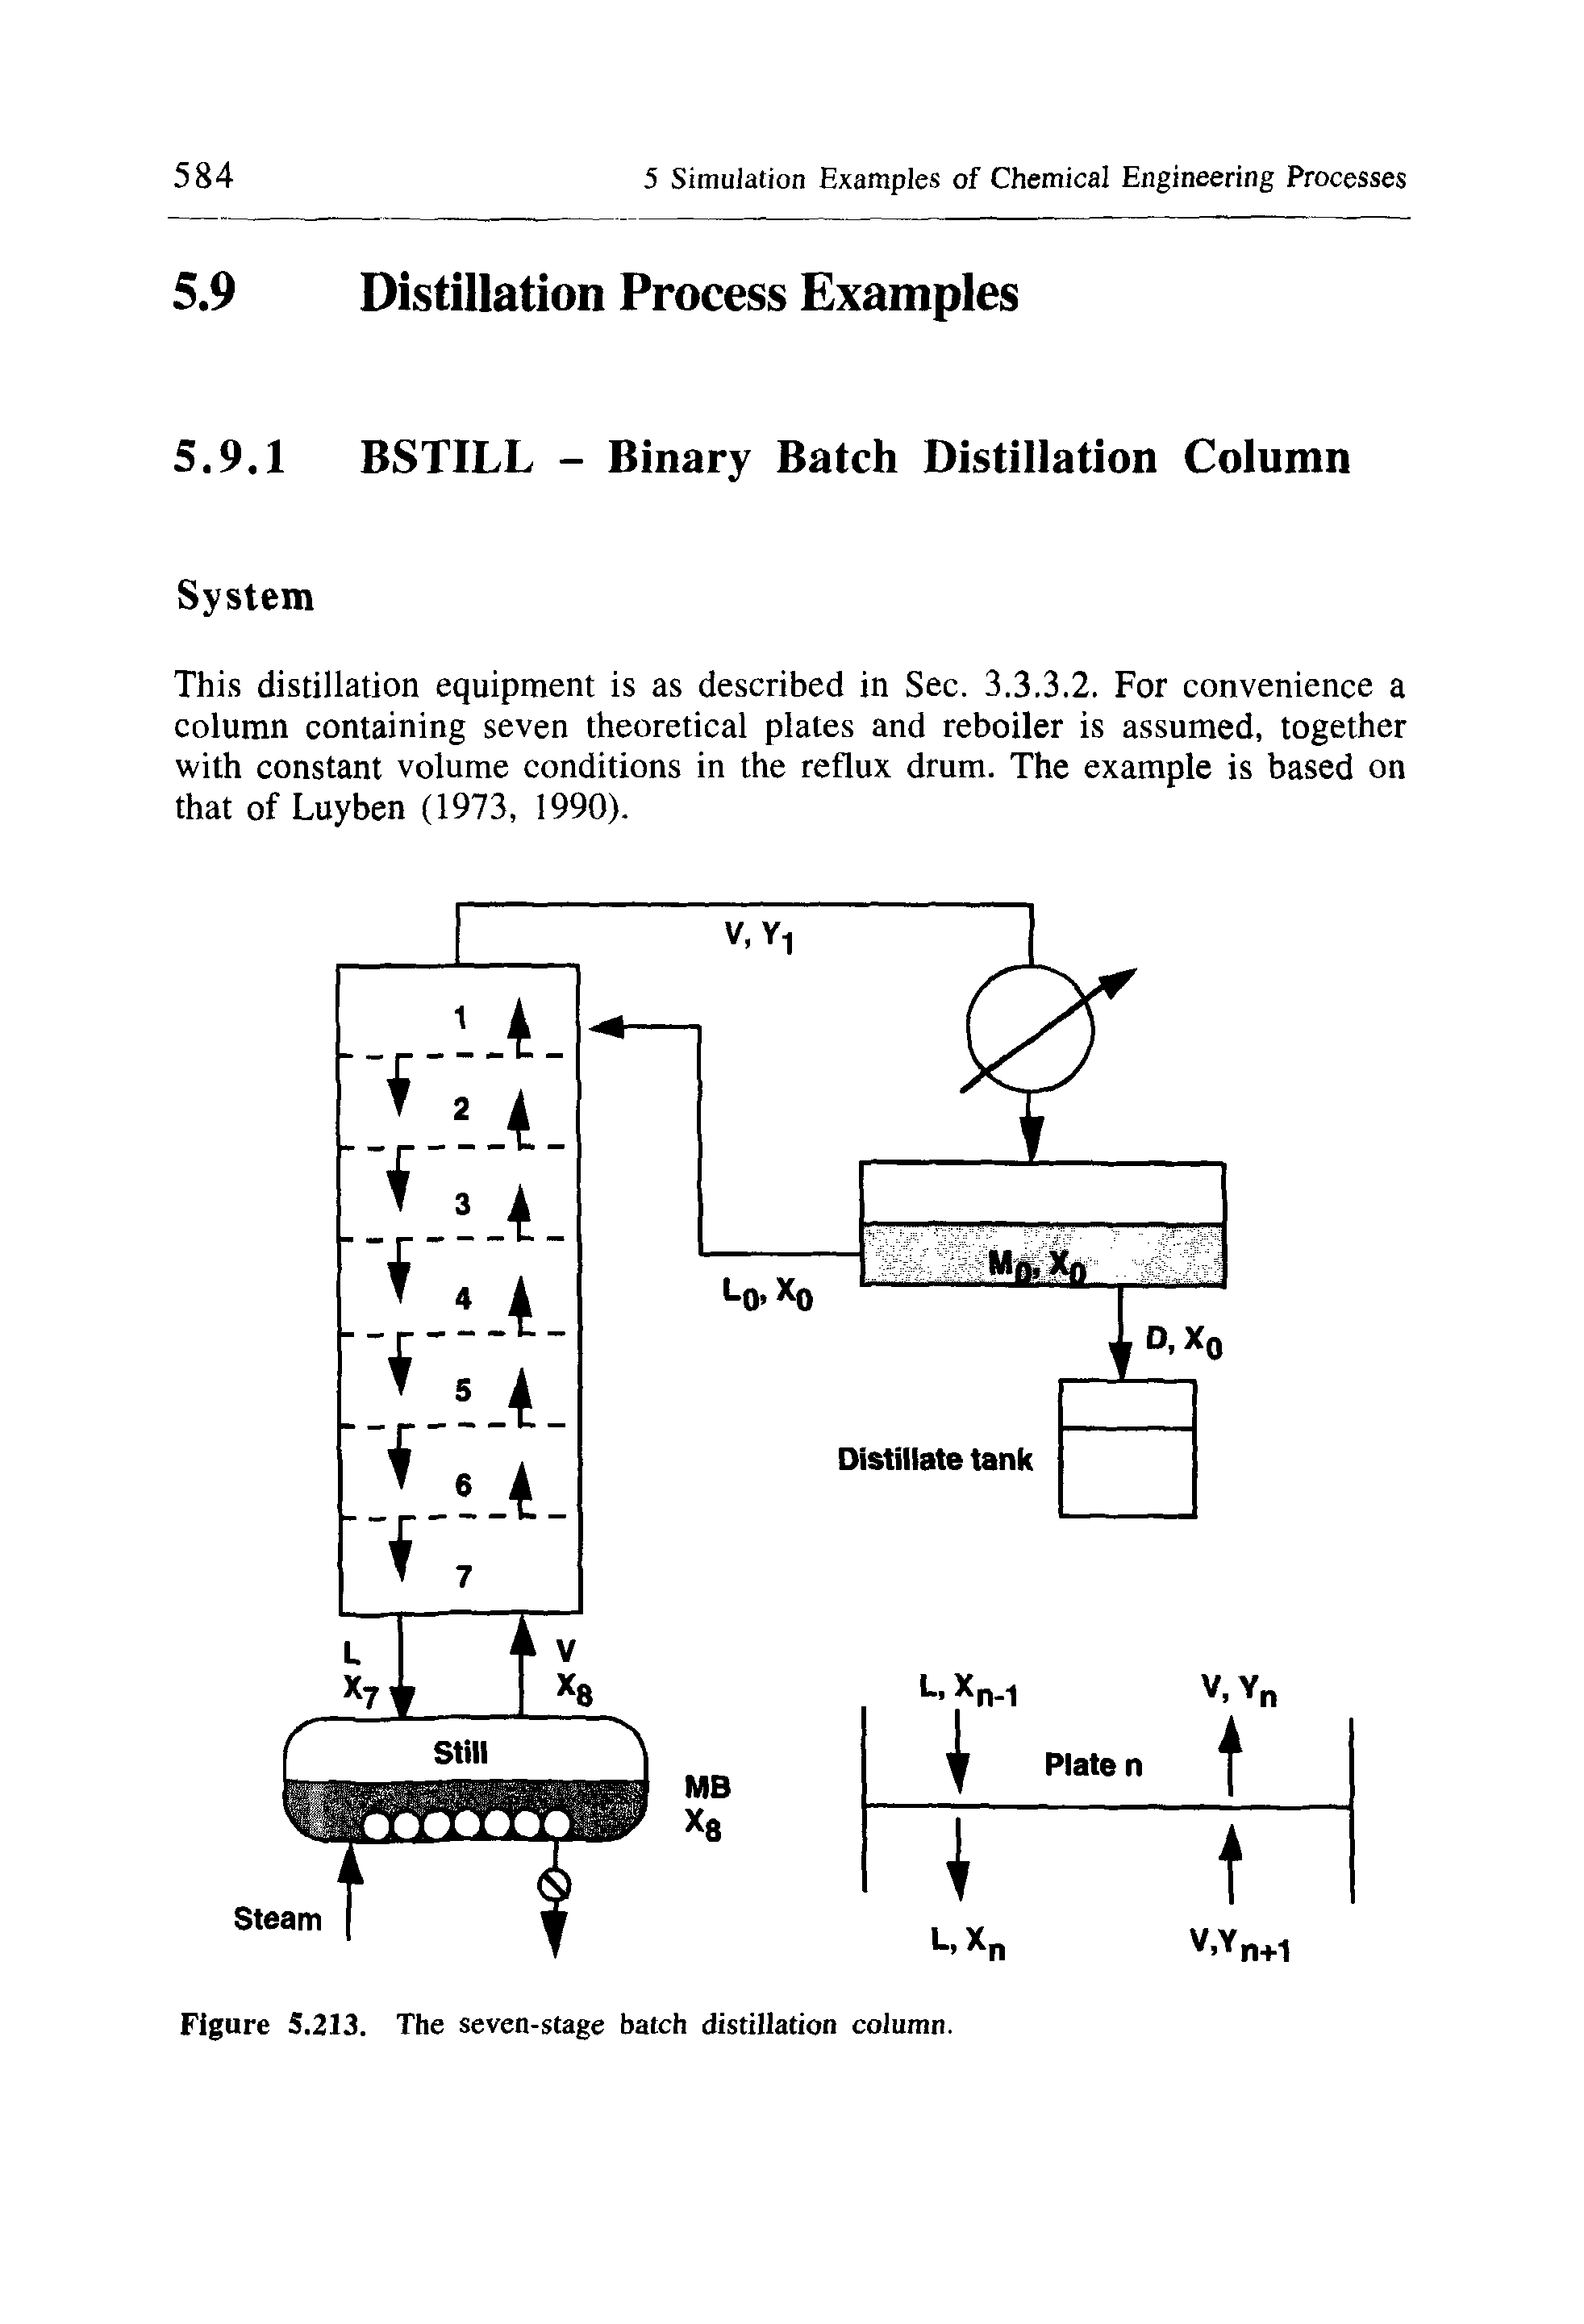 Figure 5.213. The seven-stage batch distillation column.